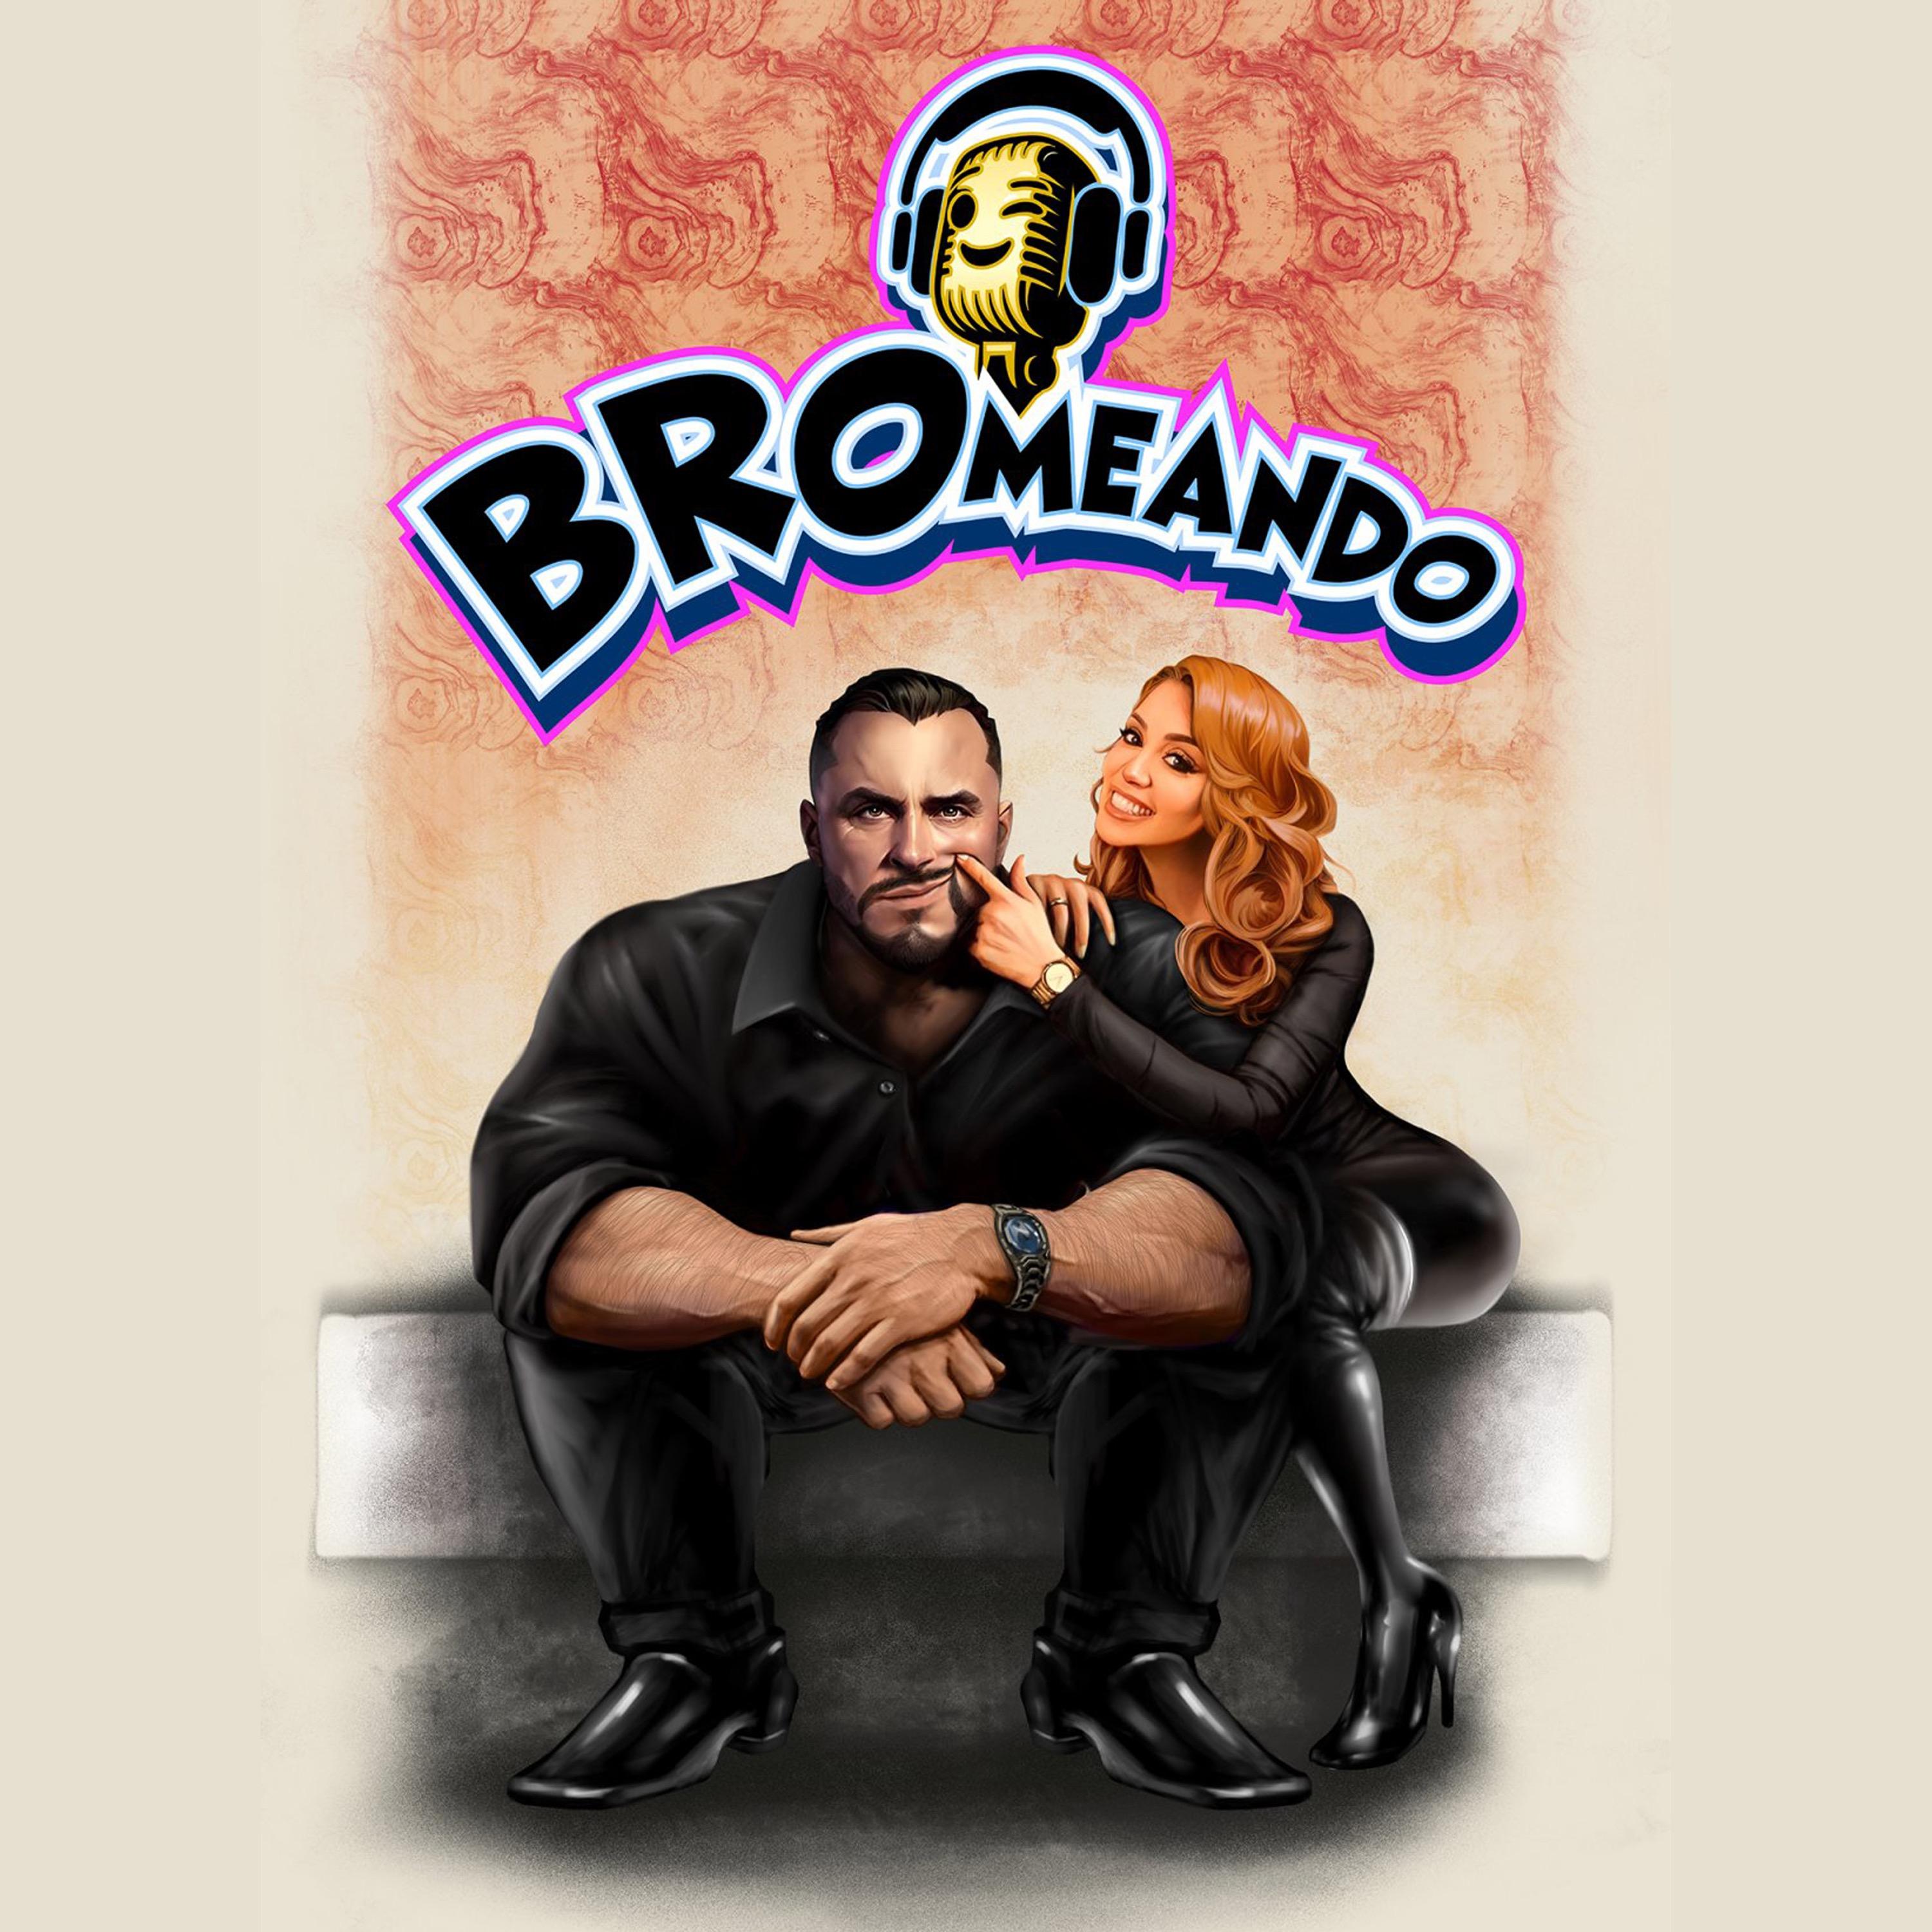 Show poster of Bromeando